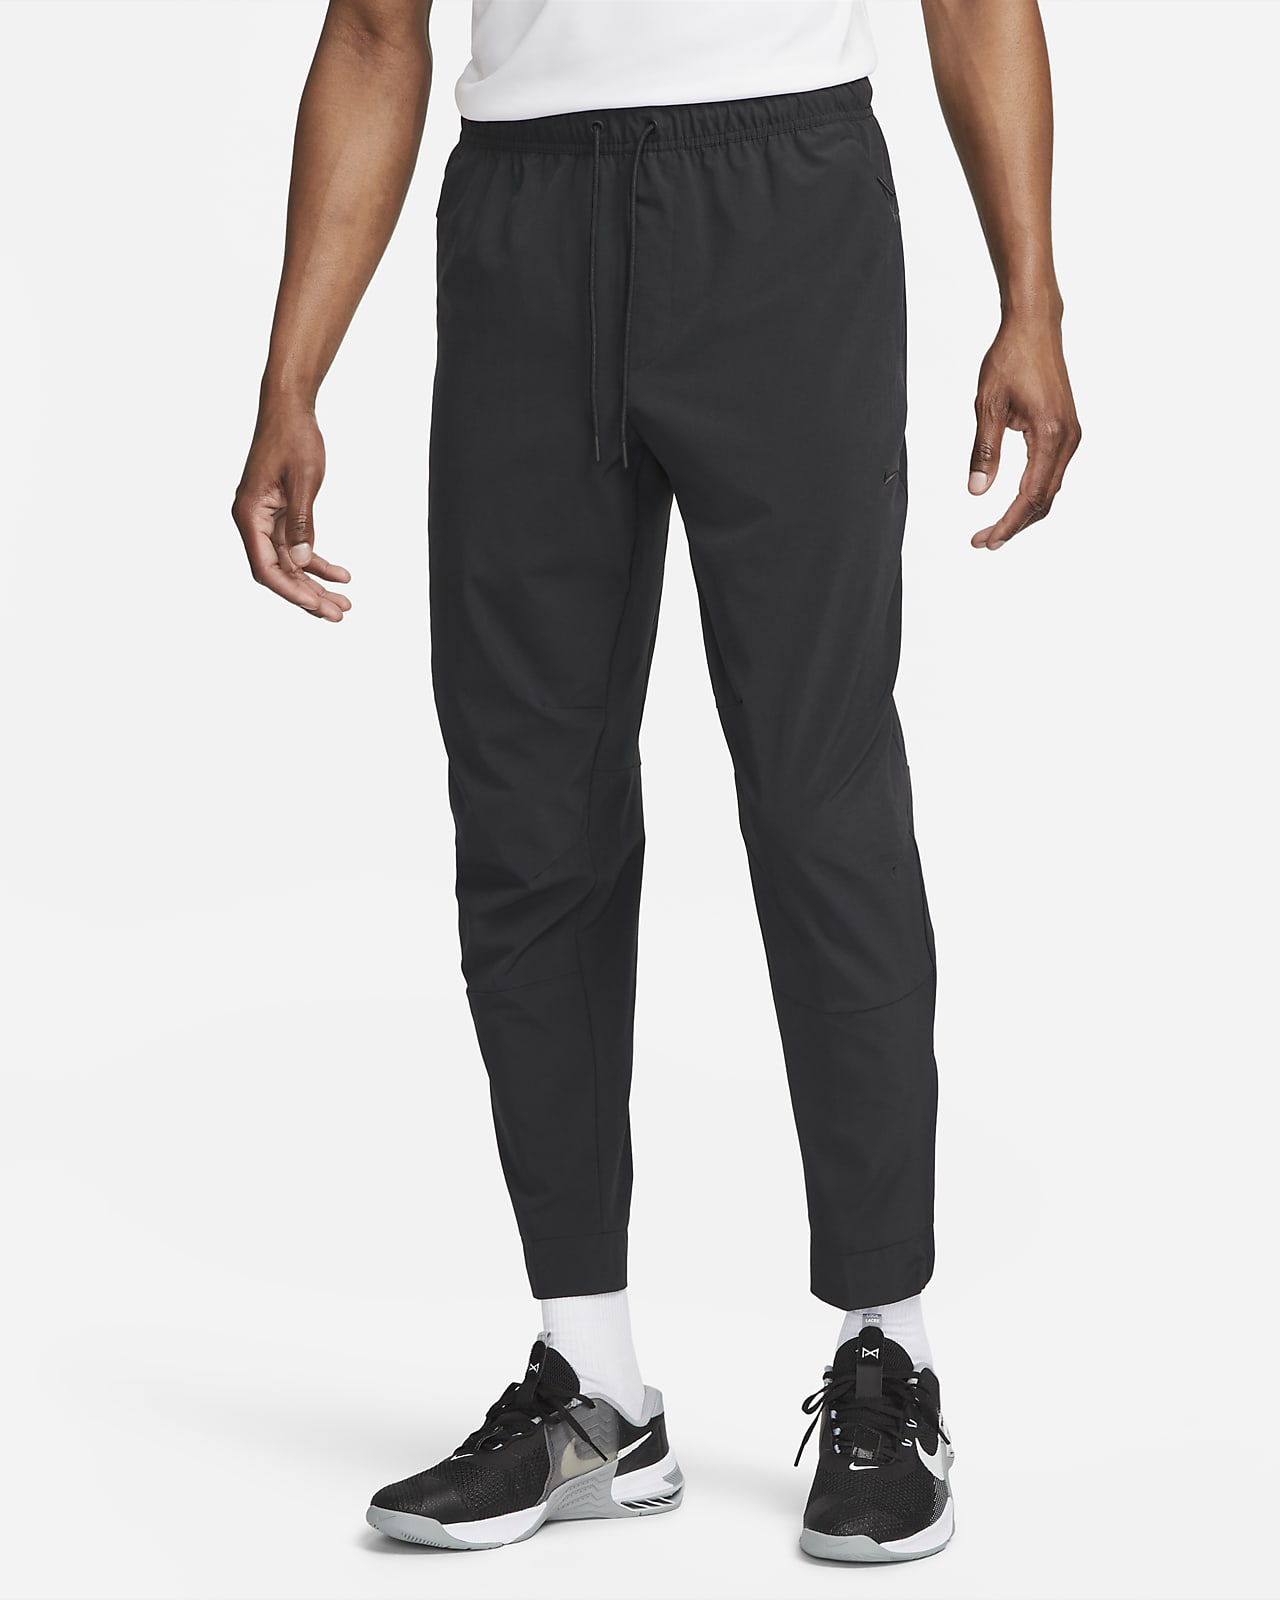 Pantaloni versatili con zip sul bordo Dri-FIT Nike Unlimited – Uomo